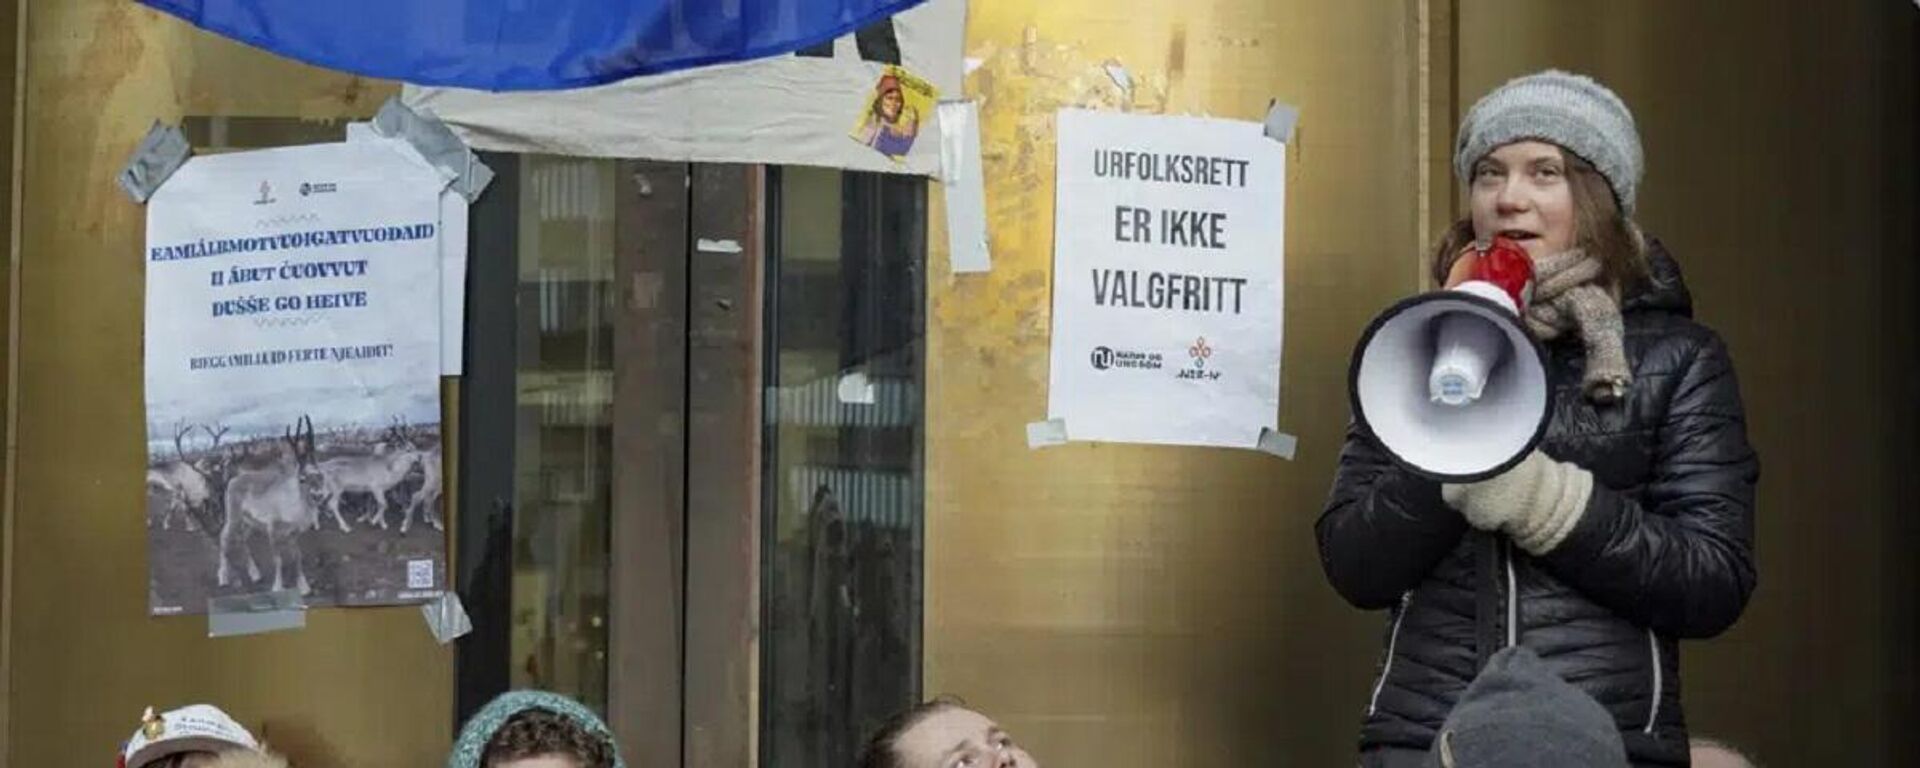 İklim aktivisti Greta Thunberg ve yerli aktivistler, Norveç'te tartışmalı olan rüzgâr türbinlerine karşı düzenledikleri protestoyu genişleterek çeşitli kamu binalarının girişlerini kapattı. - Sputnik Türkiye, 1920, 28.02.2023